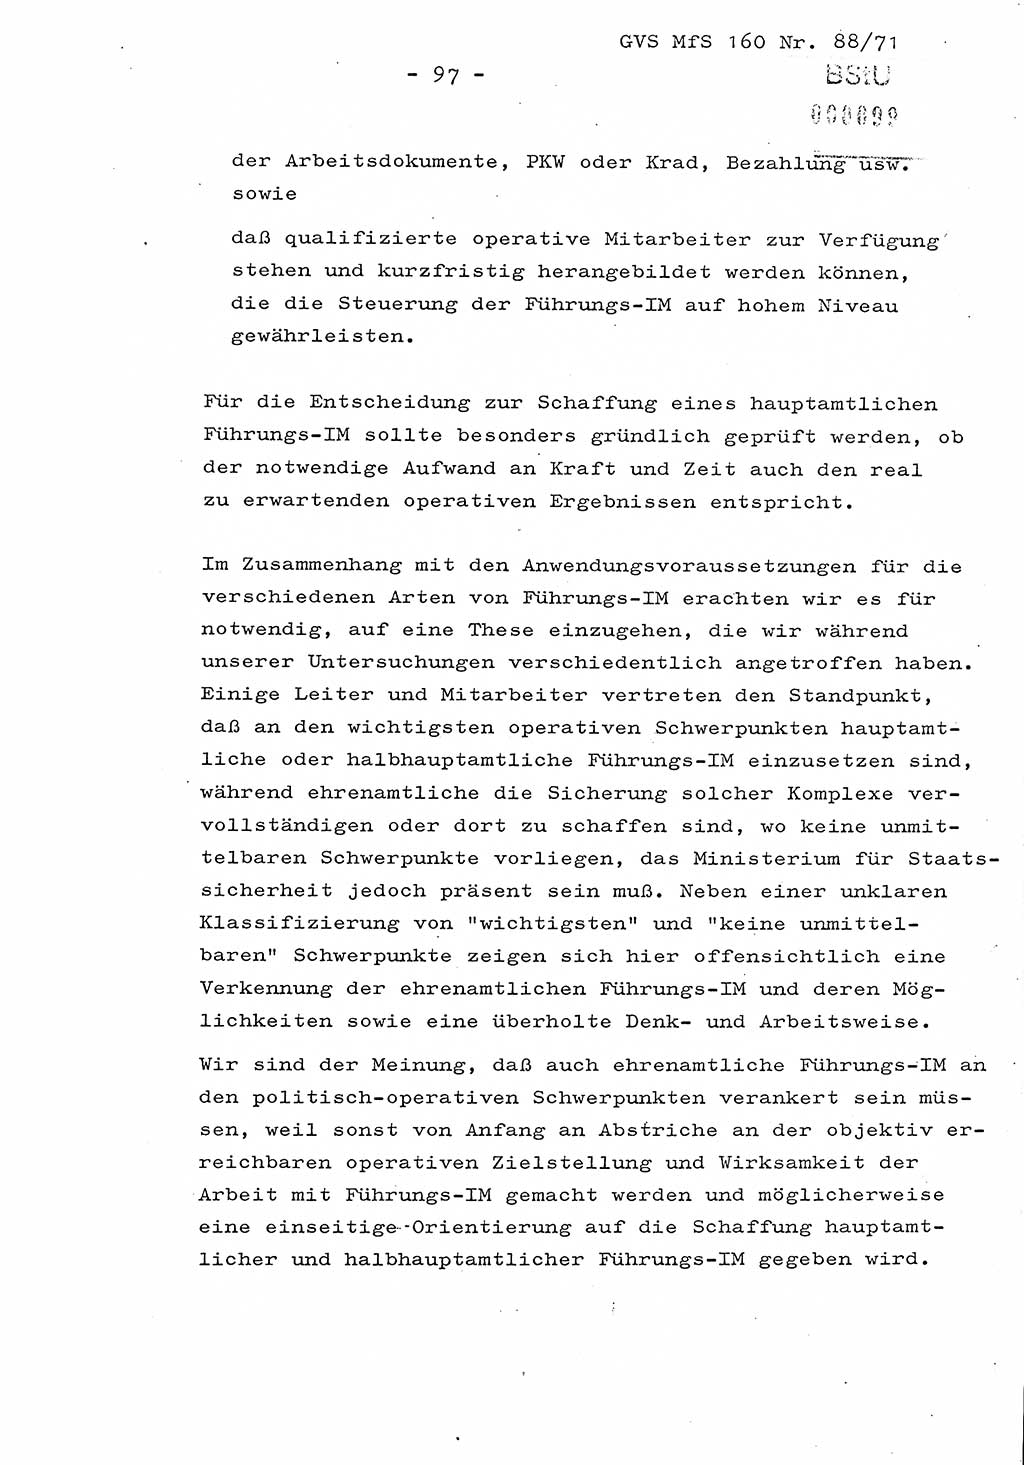 Dissertation Oberstleutnant Josef Schwarz (BV Schwerin), Major Fritz Amm (JHS), Hauptmann Peter Gräßler (JHS), Ministerium für Staatssicherheit (MfS) [Deutsche Demokratische Republik (DDR)], Juristische Hochschule (JHS), Geheime Verschlußsache (GVS) 160-88/71, Potsdam 1972, Seite 97 (Diss. MfS DDR JHS GVS 160-88/71 1972, S. 97)